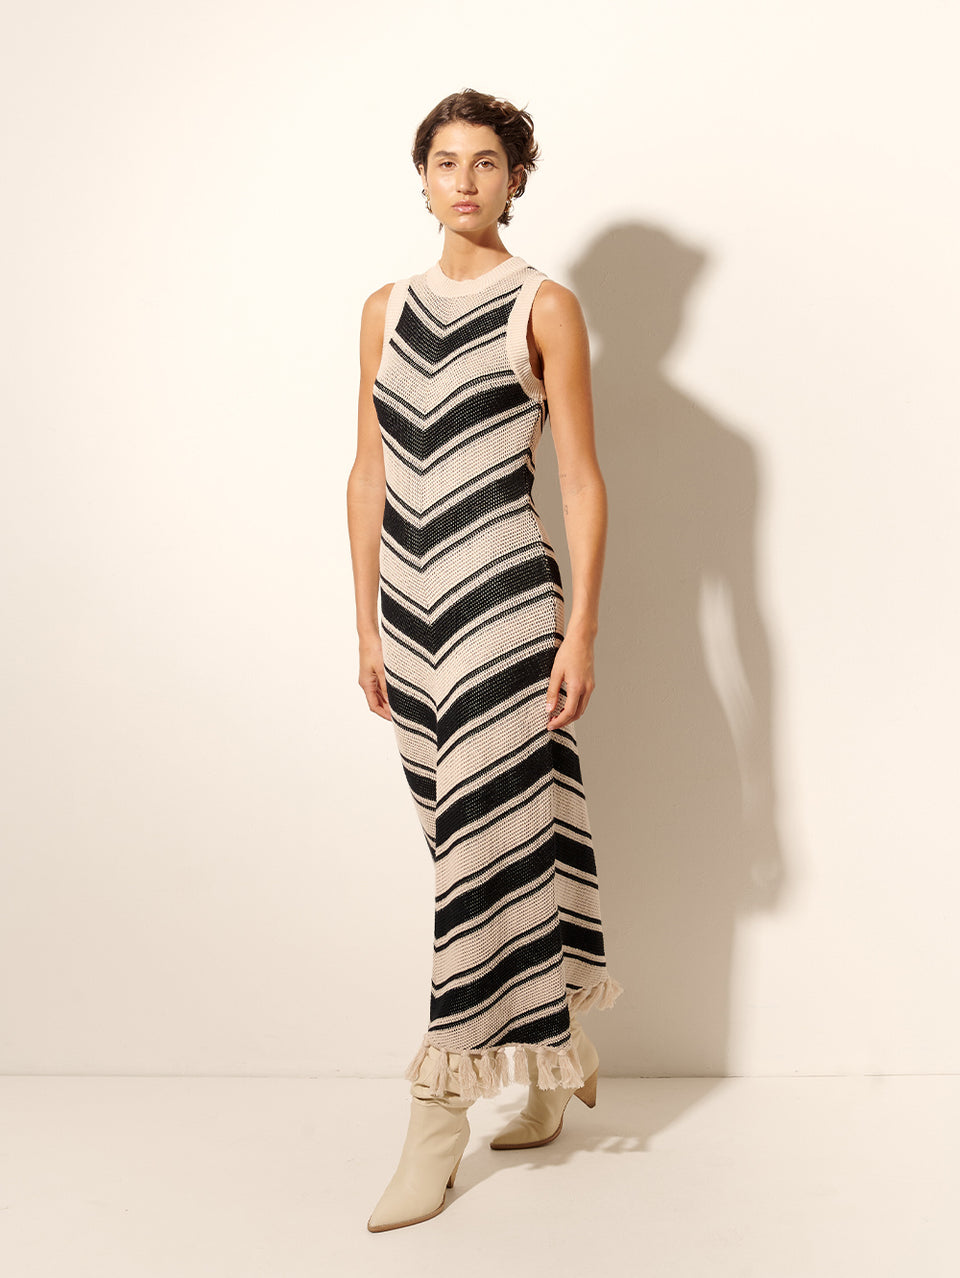 Anita Knit Midi Dress KIVARI | Model wears black and white chevron knit dress side view